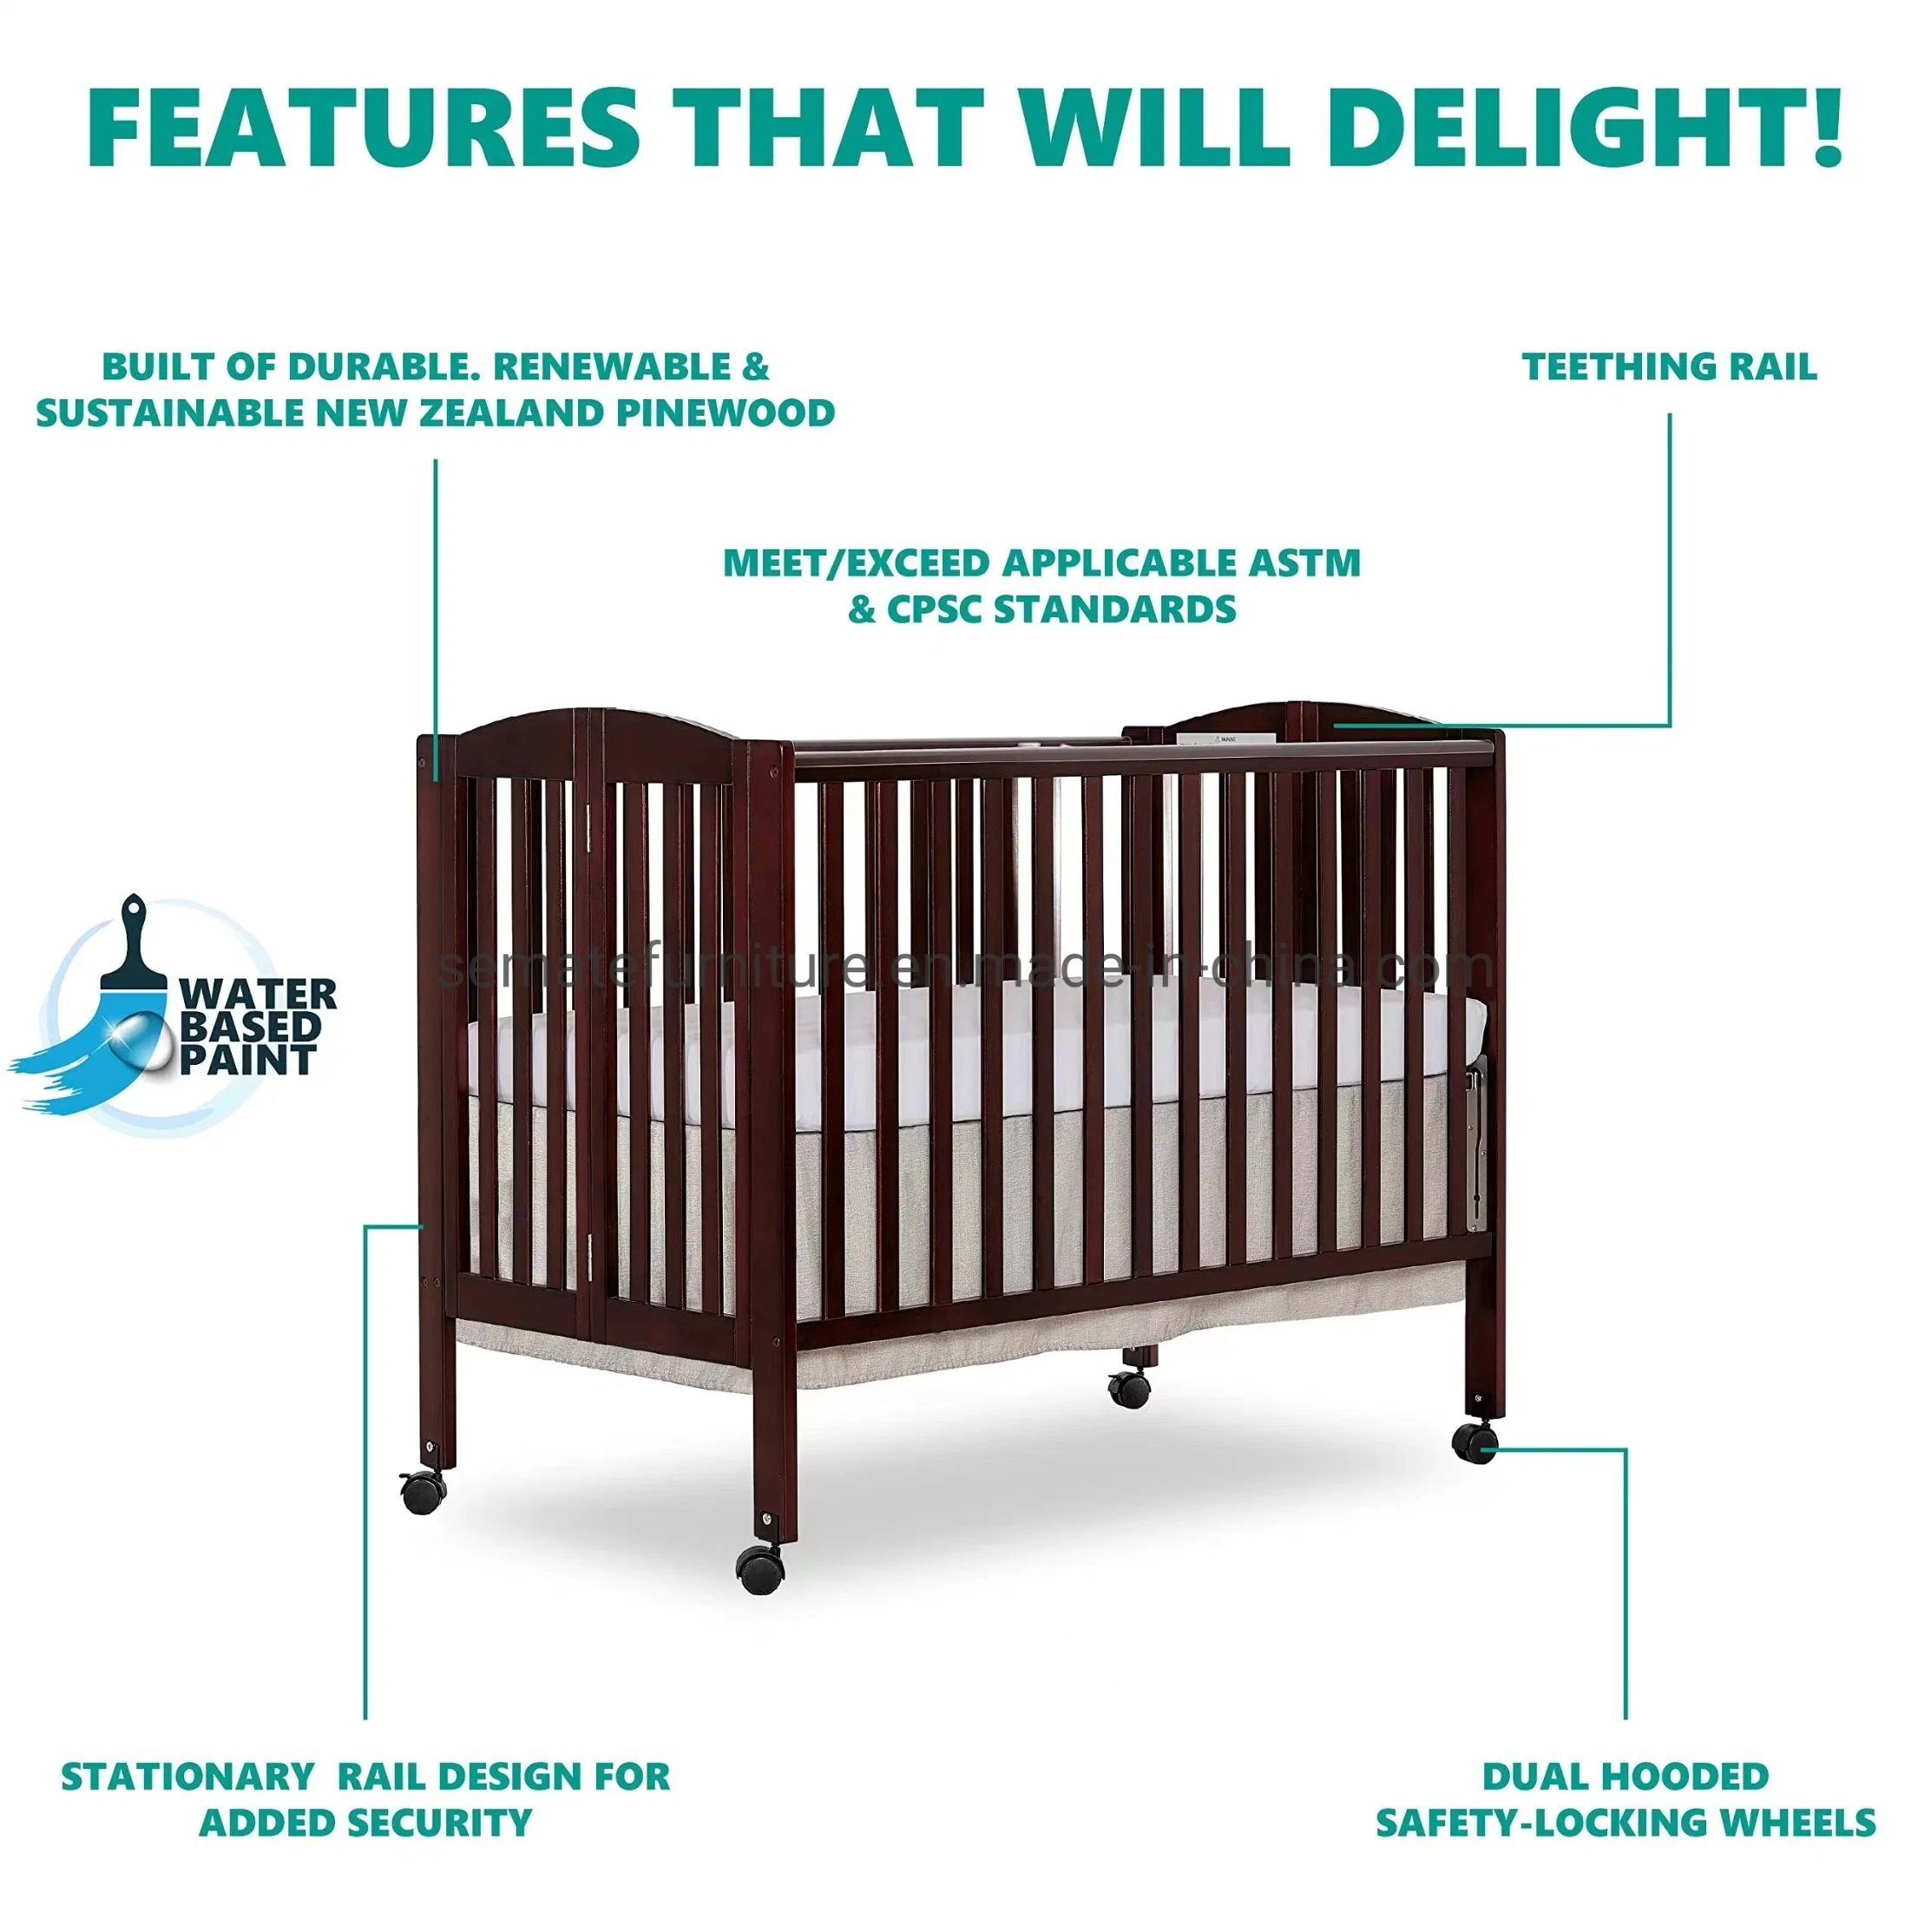 أثاث طفل عالي الجودة ومتين وسرير طفل متنقل بحجم كامل 3 في 1 قابل للطي وسرير جانبي ثابت قابل للطي وسرير محمول قابل للطي